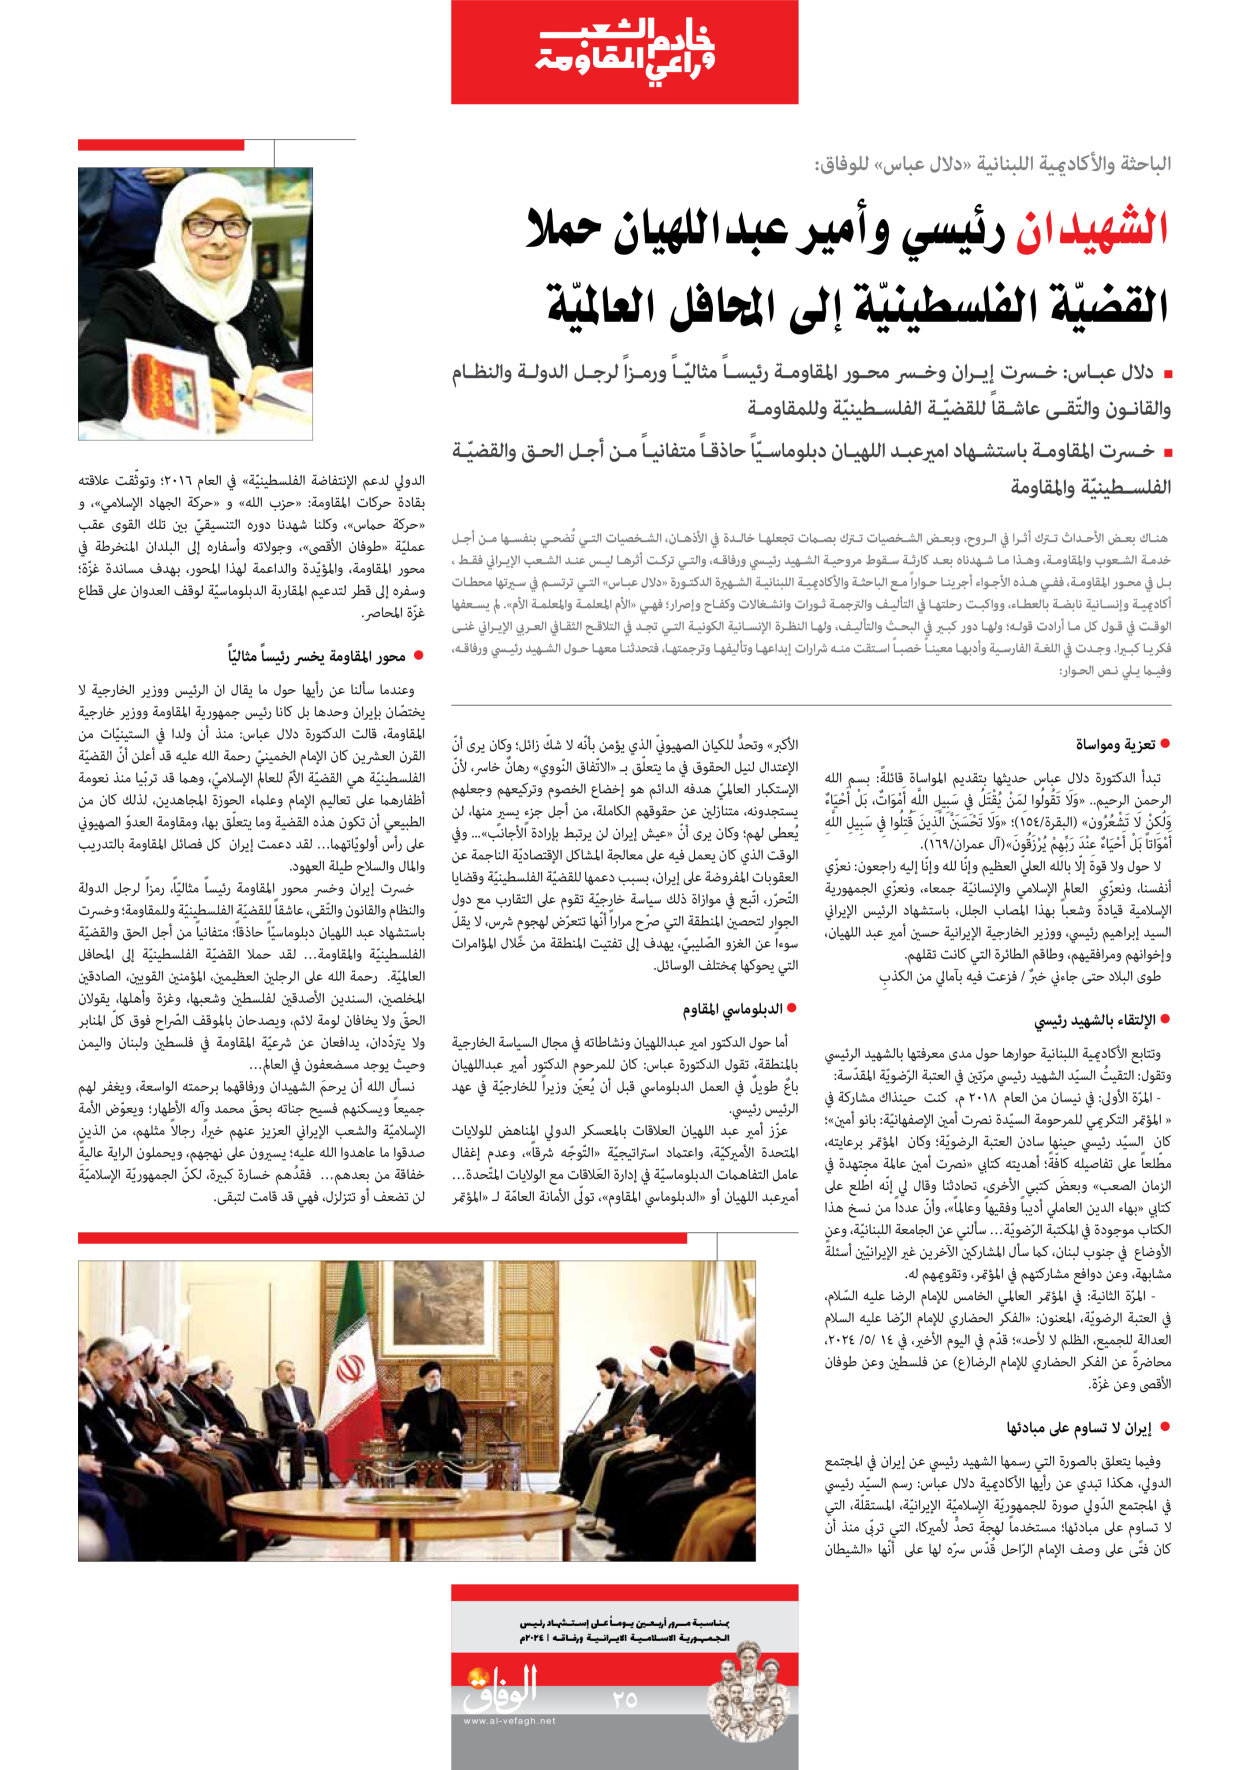 صحیفة ایران الدولیة الوفاق - ملحق ویژه نامه چهلم شهید رییسی - ٢٩ يونيو ٢٠٢٤ - الصفحة ۲٥